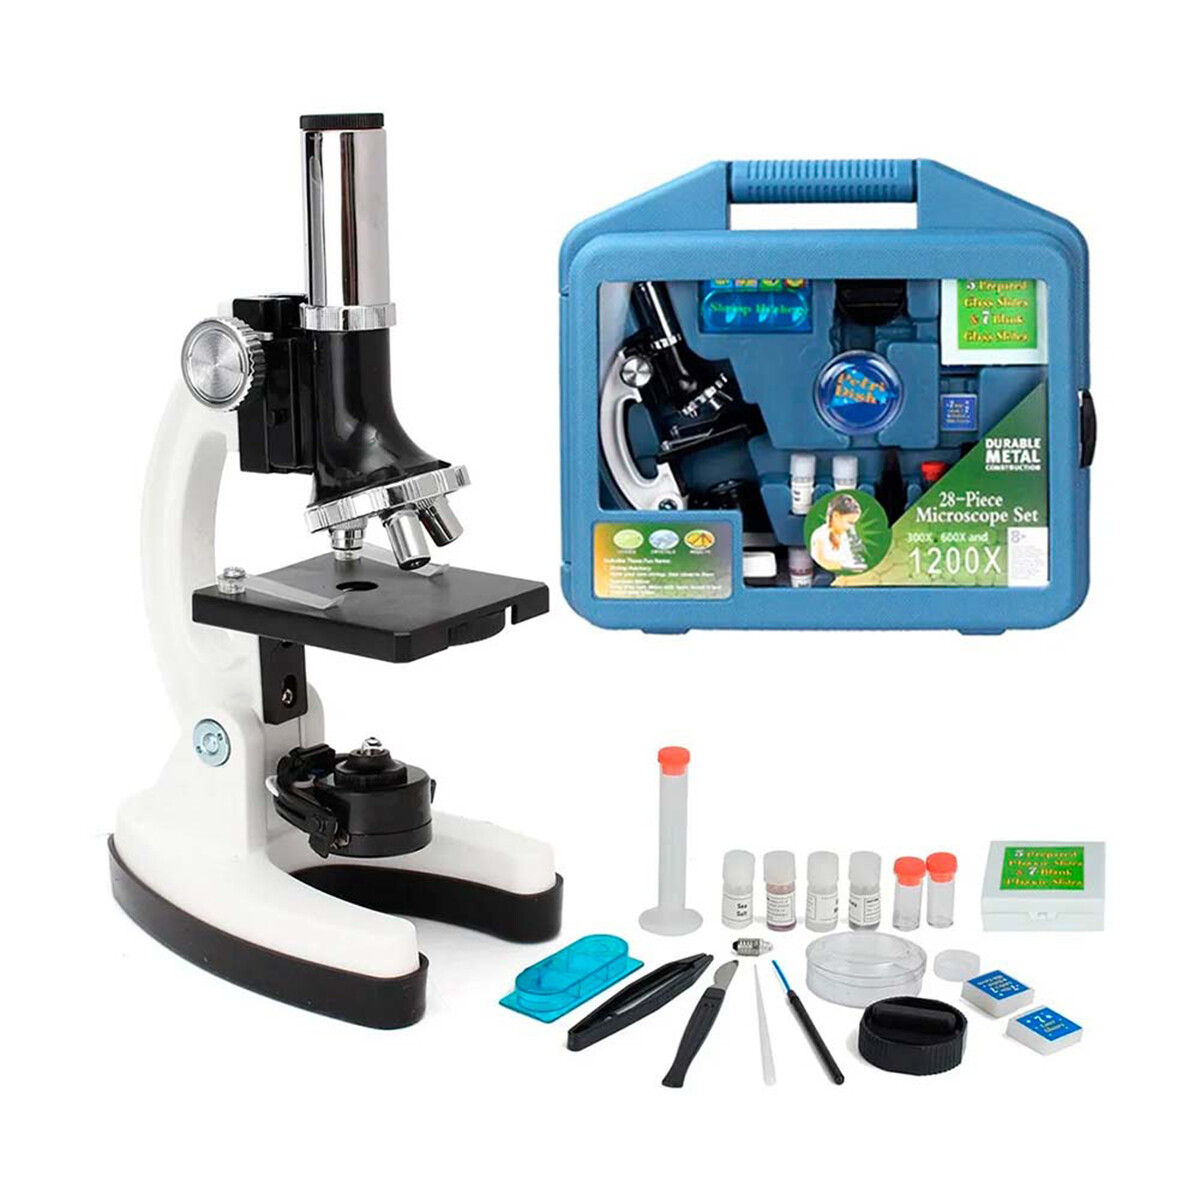 Kit Microscopio con Accesorios 1200X - 001 